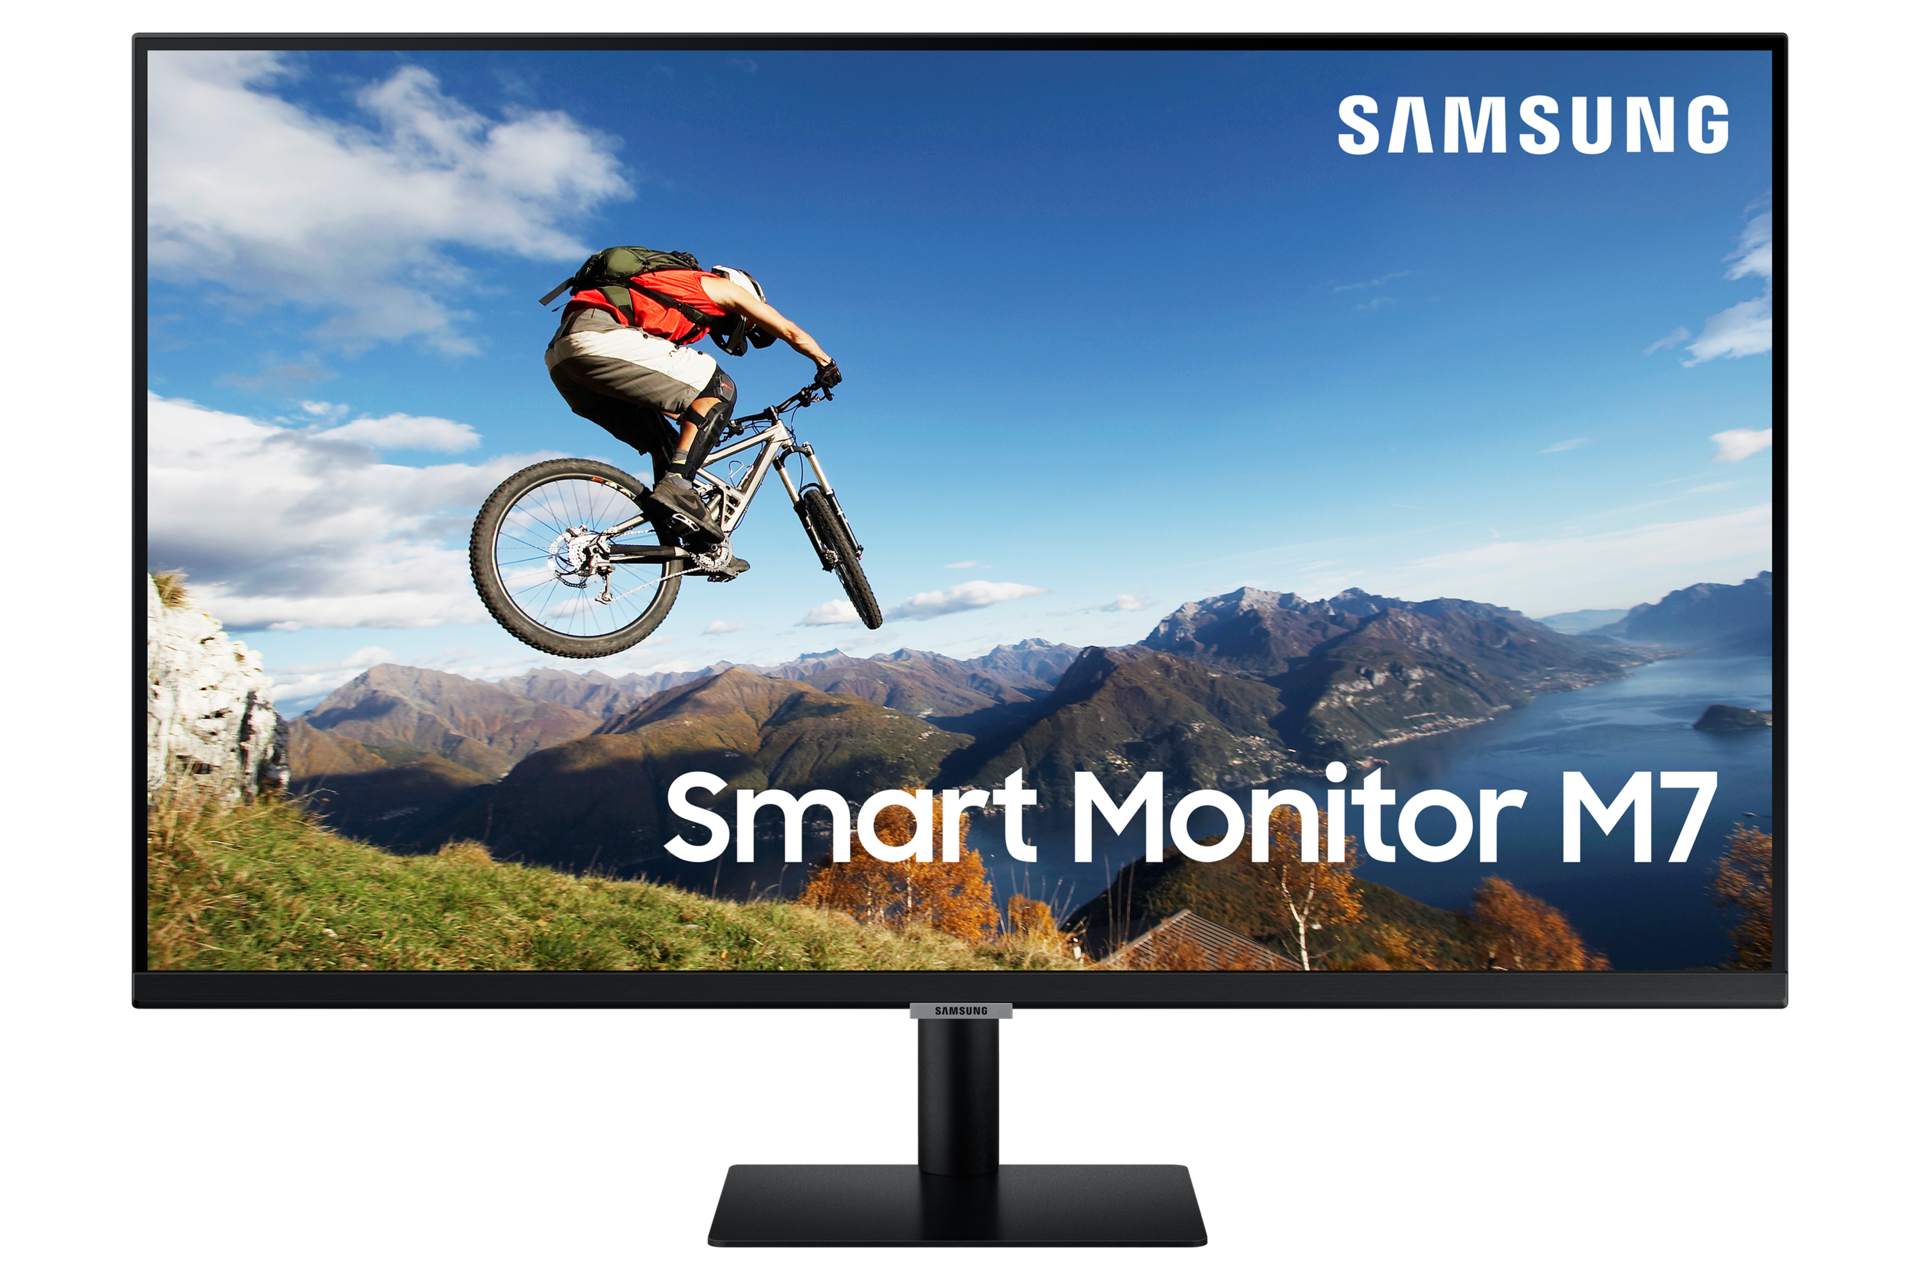 Samsung Smart Monitor m7 32 panel va resolución uhd 4k 3840 x 2160 hdr10 tizen hub tipoc negro ls32am700uuxen led ultrahd reacondicionado 6858 cm 27 8 60 2.0 s32am700uu ls32am700uu 32´´ 813